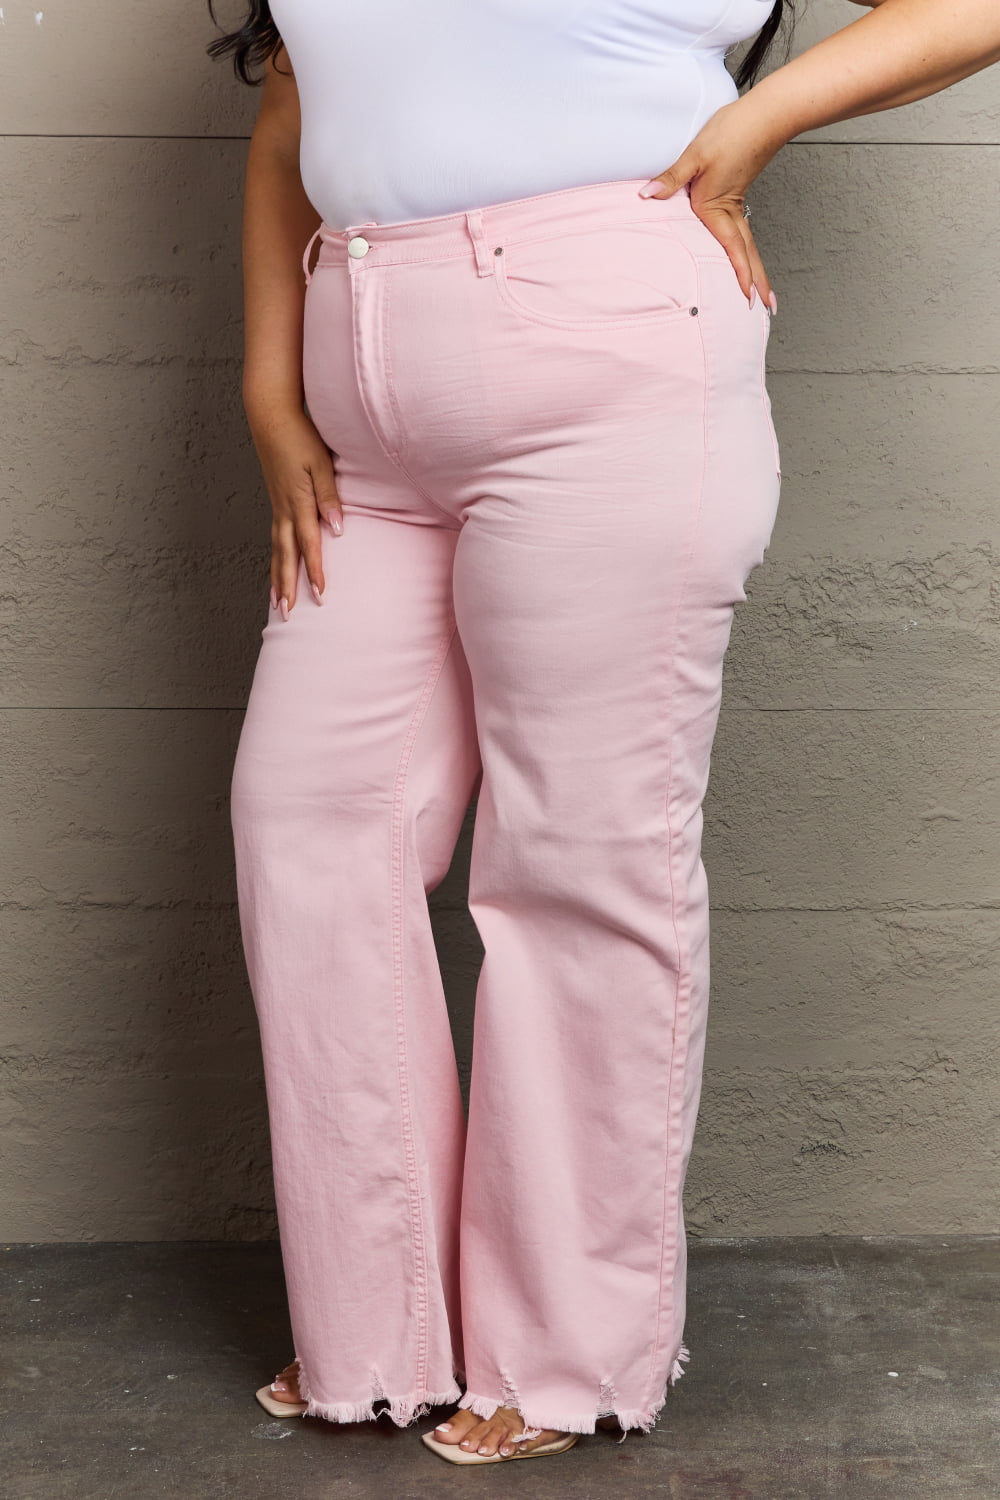 RISEN Raelene Full Size High Waist Wide Leg Jeans in Light Pink Jeans Trendsi   